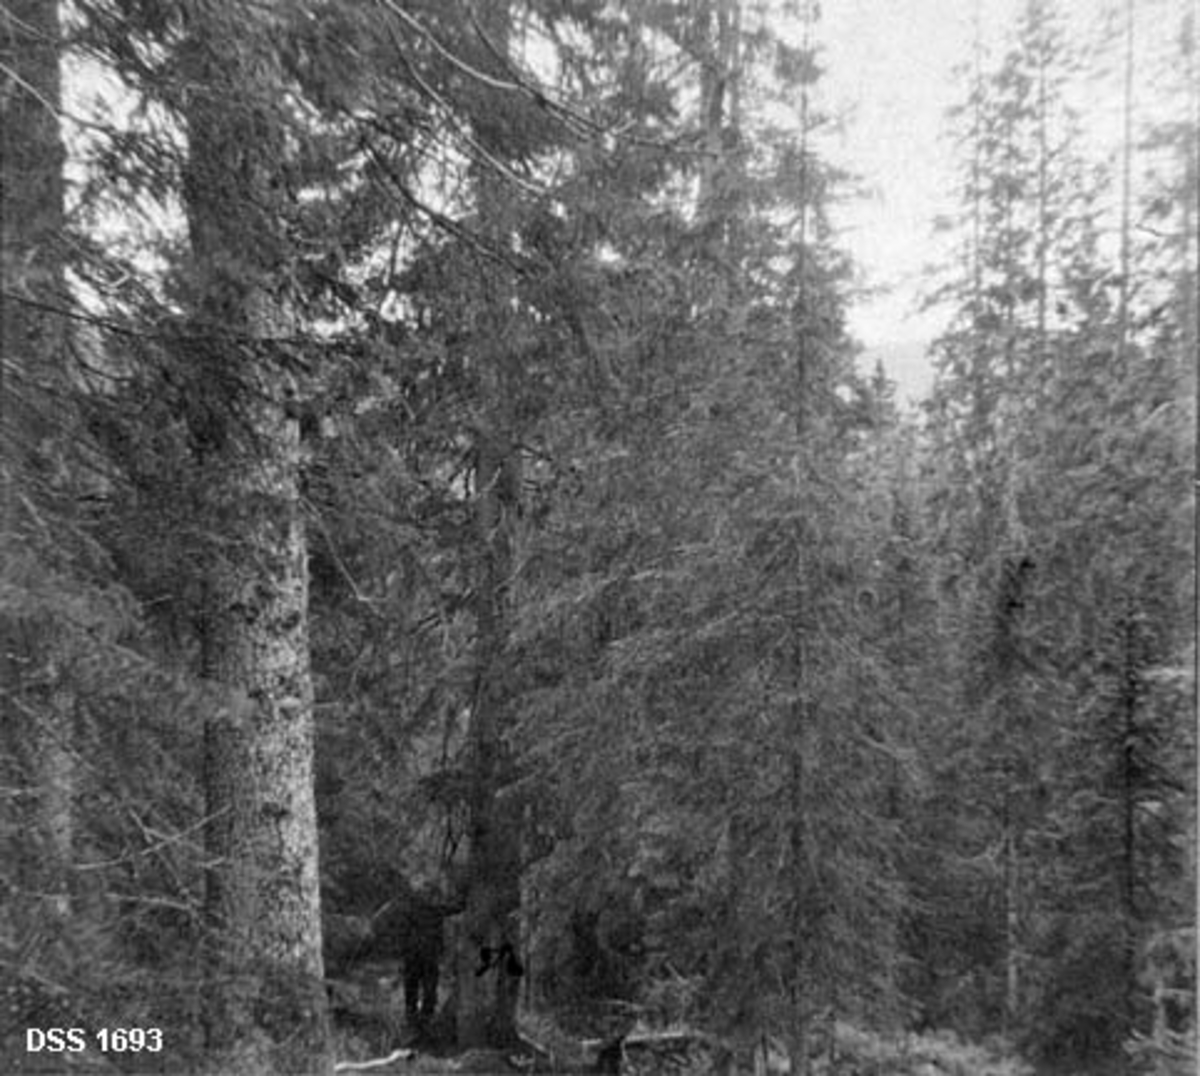 Skoglandskap i Rør- og Langvatn statsskog i Namdalseid.  To ulike opptak fra samme skog.  Begge viser tett, fleraldrig granskog, tilsynelatende uten spor av hogst.  Derimot ligger det et vindfall på bakken på begge fotografiene.  Begge har også en menneskeskikkelse.  På det venstre opptaket er det nærmest bare en mørk, litt fjern skikkelse under ei gran.  På det høyre opptaket er det en mann som står ved en granlegg til venstre i forgrunnen. 